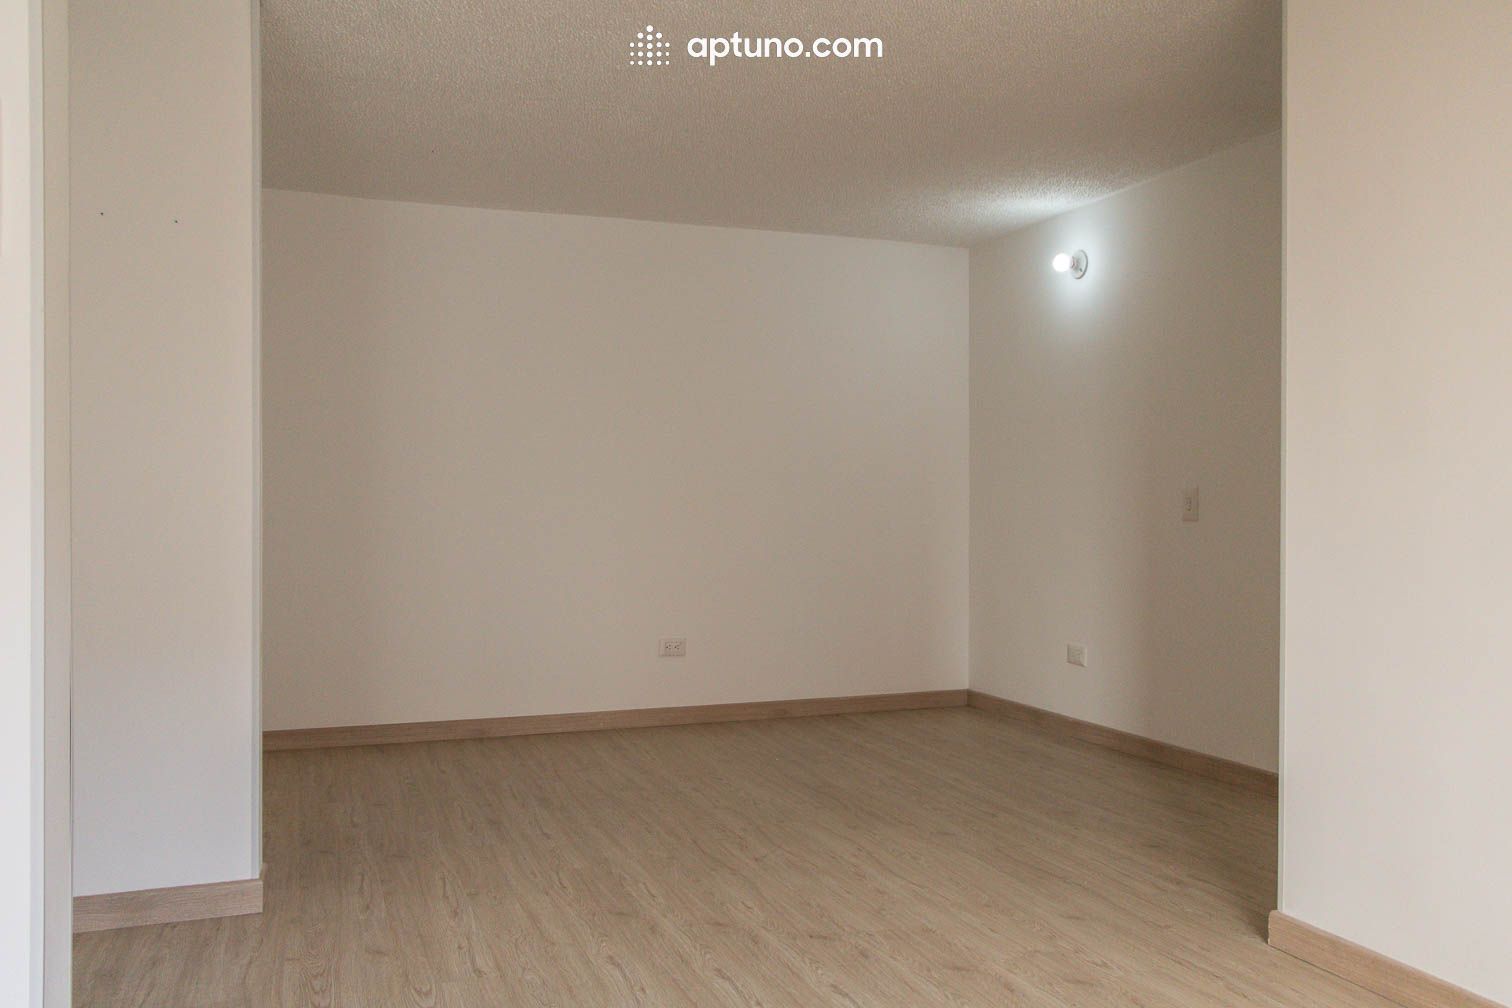 Apartamento en arriendo Tocancipá 61 m² - $ 910.000,00